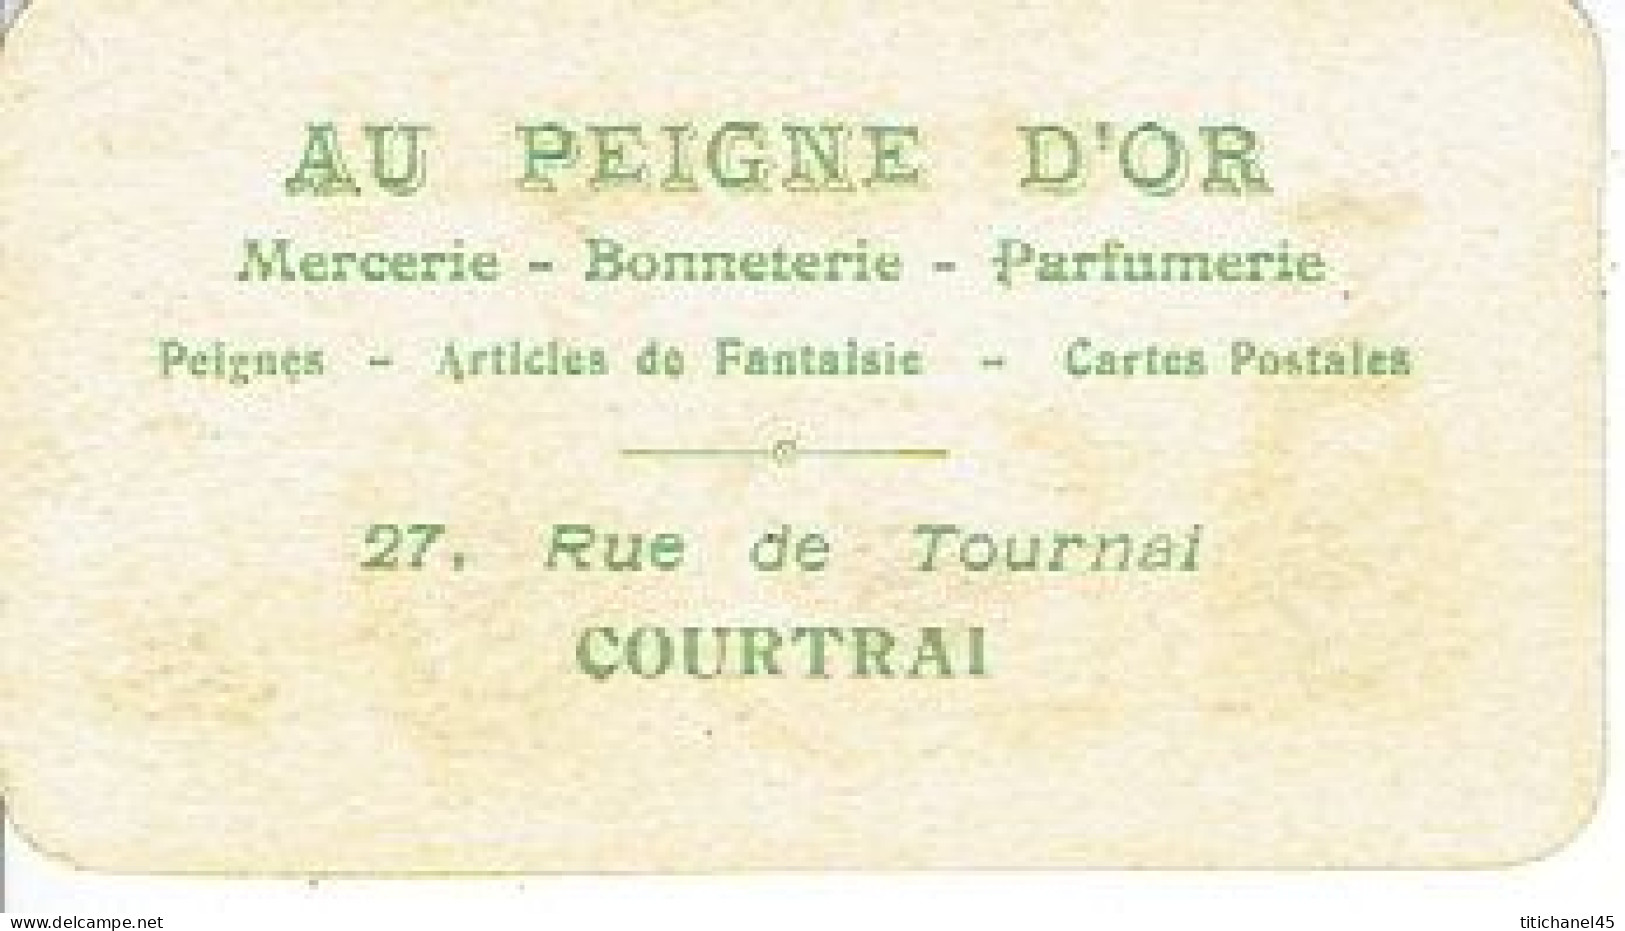 Carte Parfum MISMELIS De L.T. PIVER - Carte Offerte Par "Au Peigne D'or" Parfumerie à Courtrai - Vintage (until 1960)